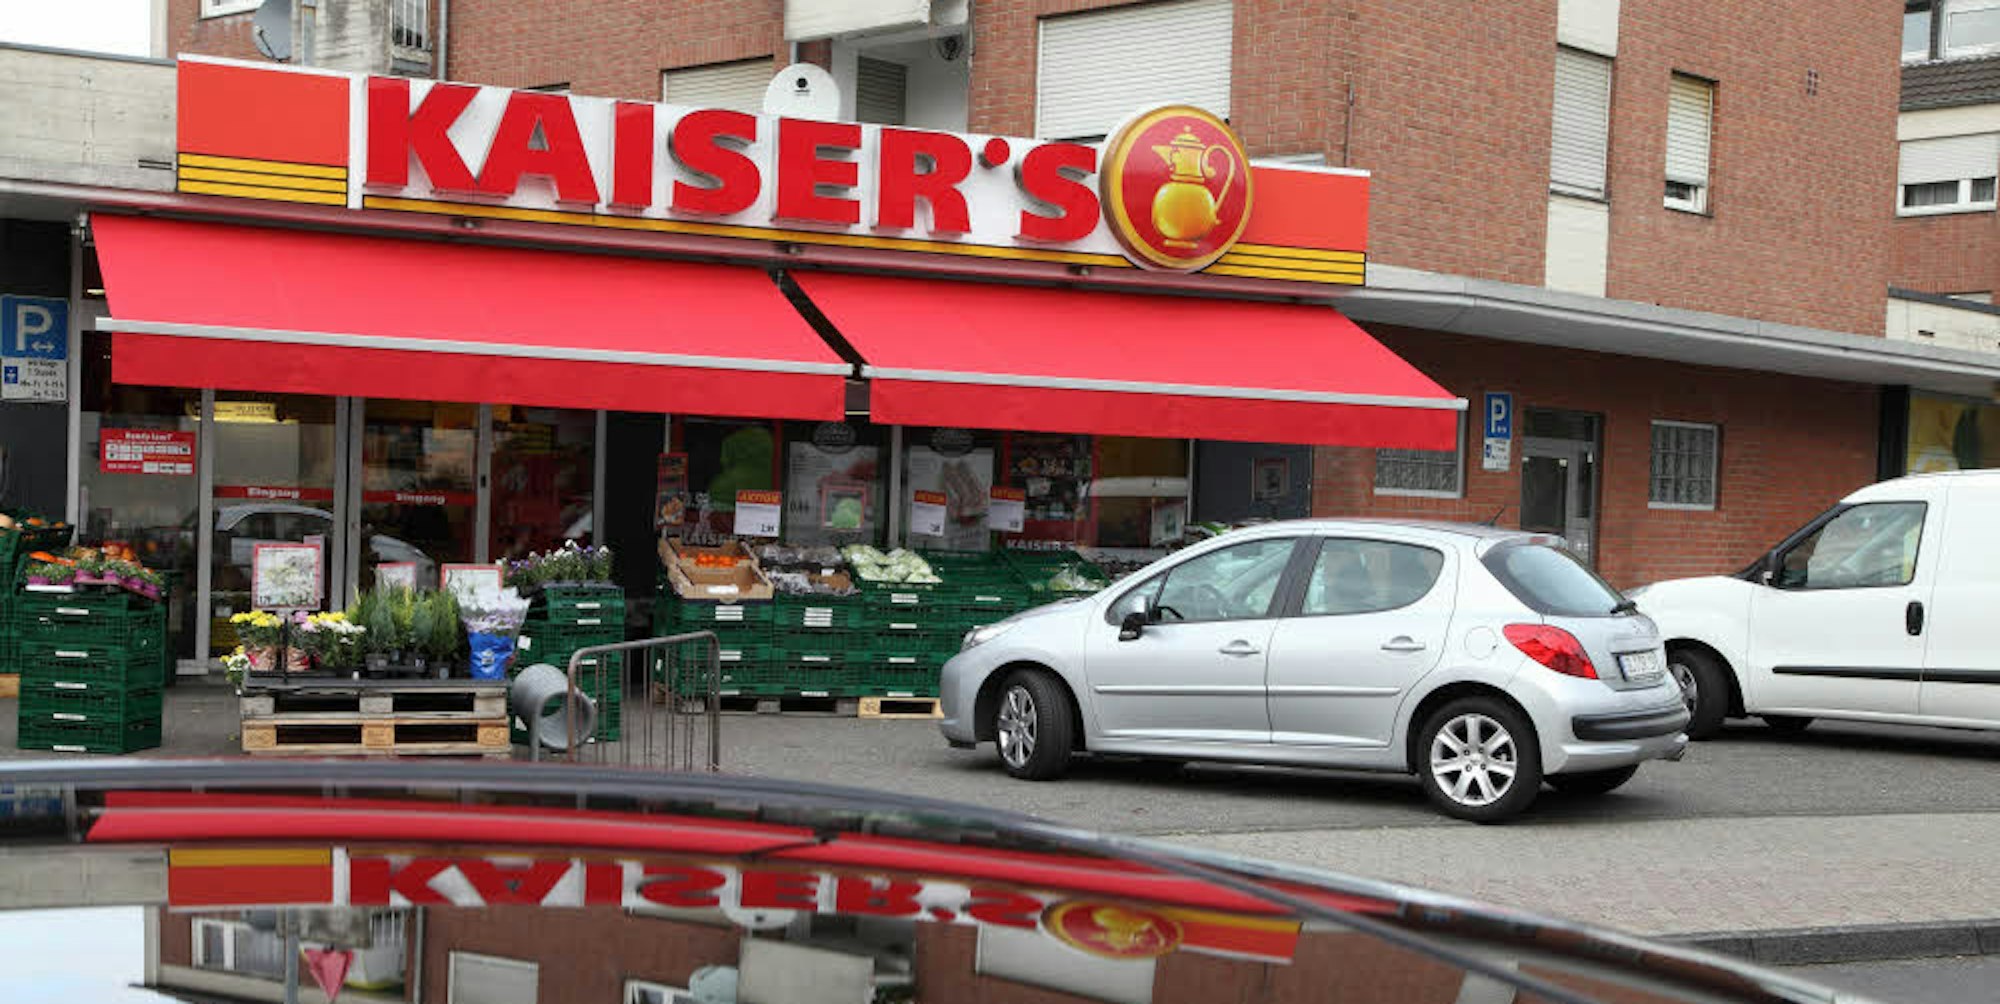 Für den Ortsteil Hand ist der Kaiser’s-Supermarkt das einzige Lebensmittelgeschäft, das zu Fuß erreichbar ist.